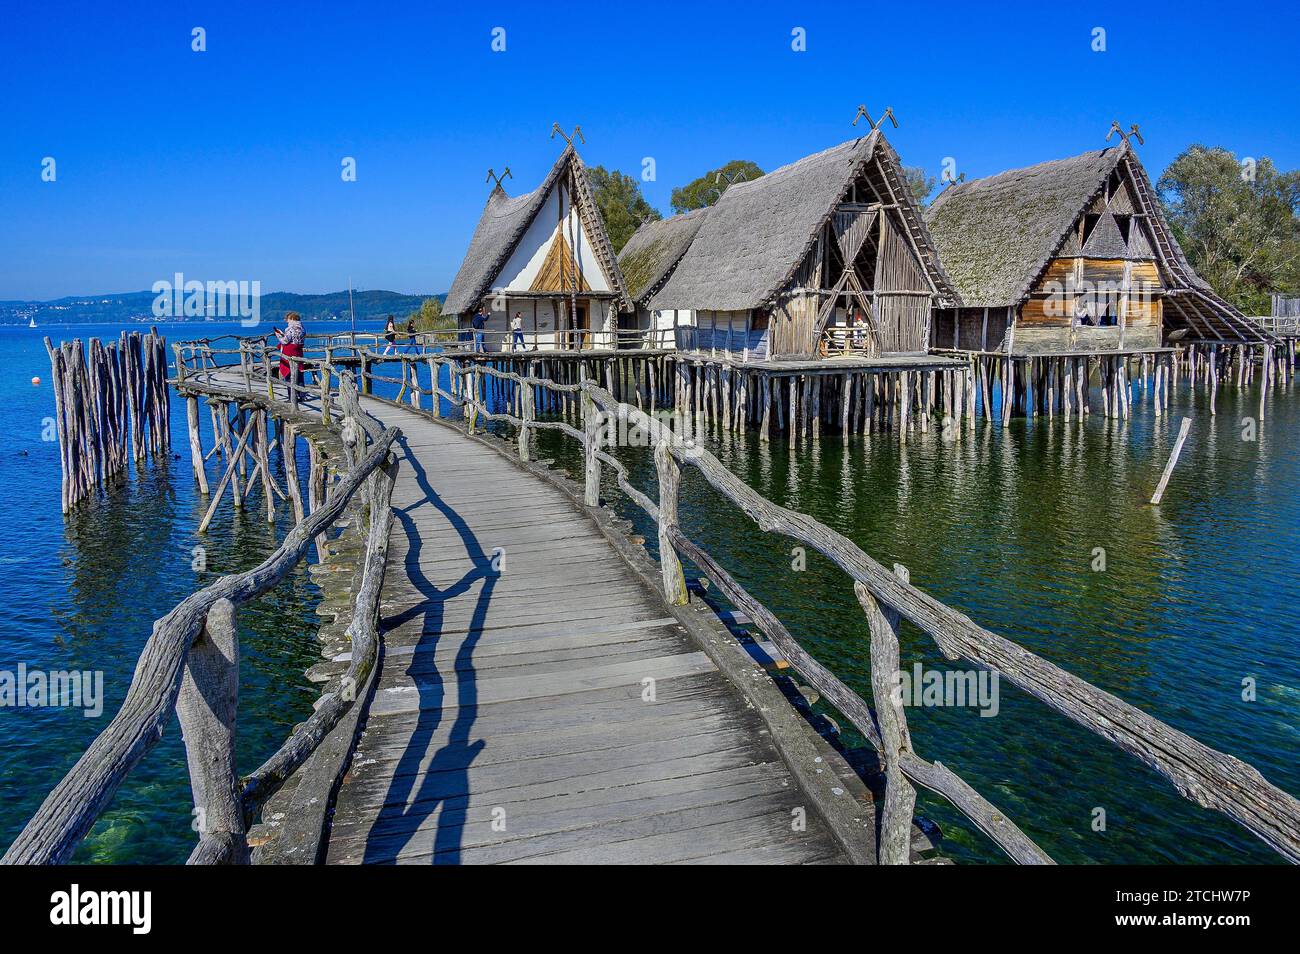 Des habitations en tas sur les rives du lac de Constance, une attraction touristique de la région et le plus ancien musée archéologique en plein air d'Allemagne, Uhldingen Banque D'Images